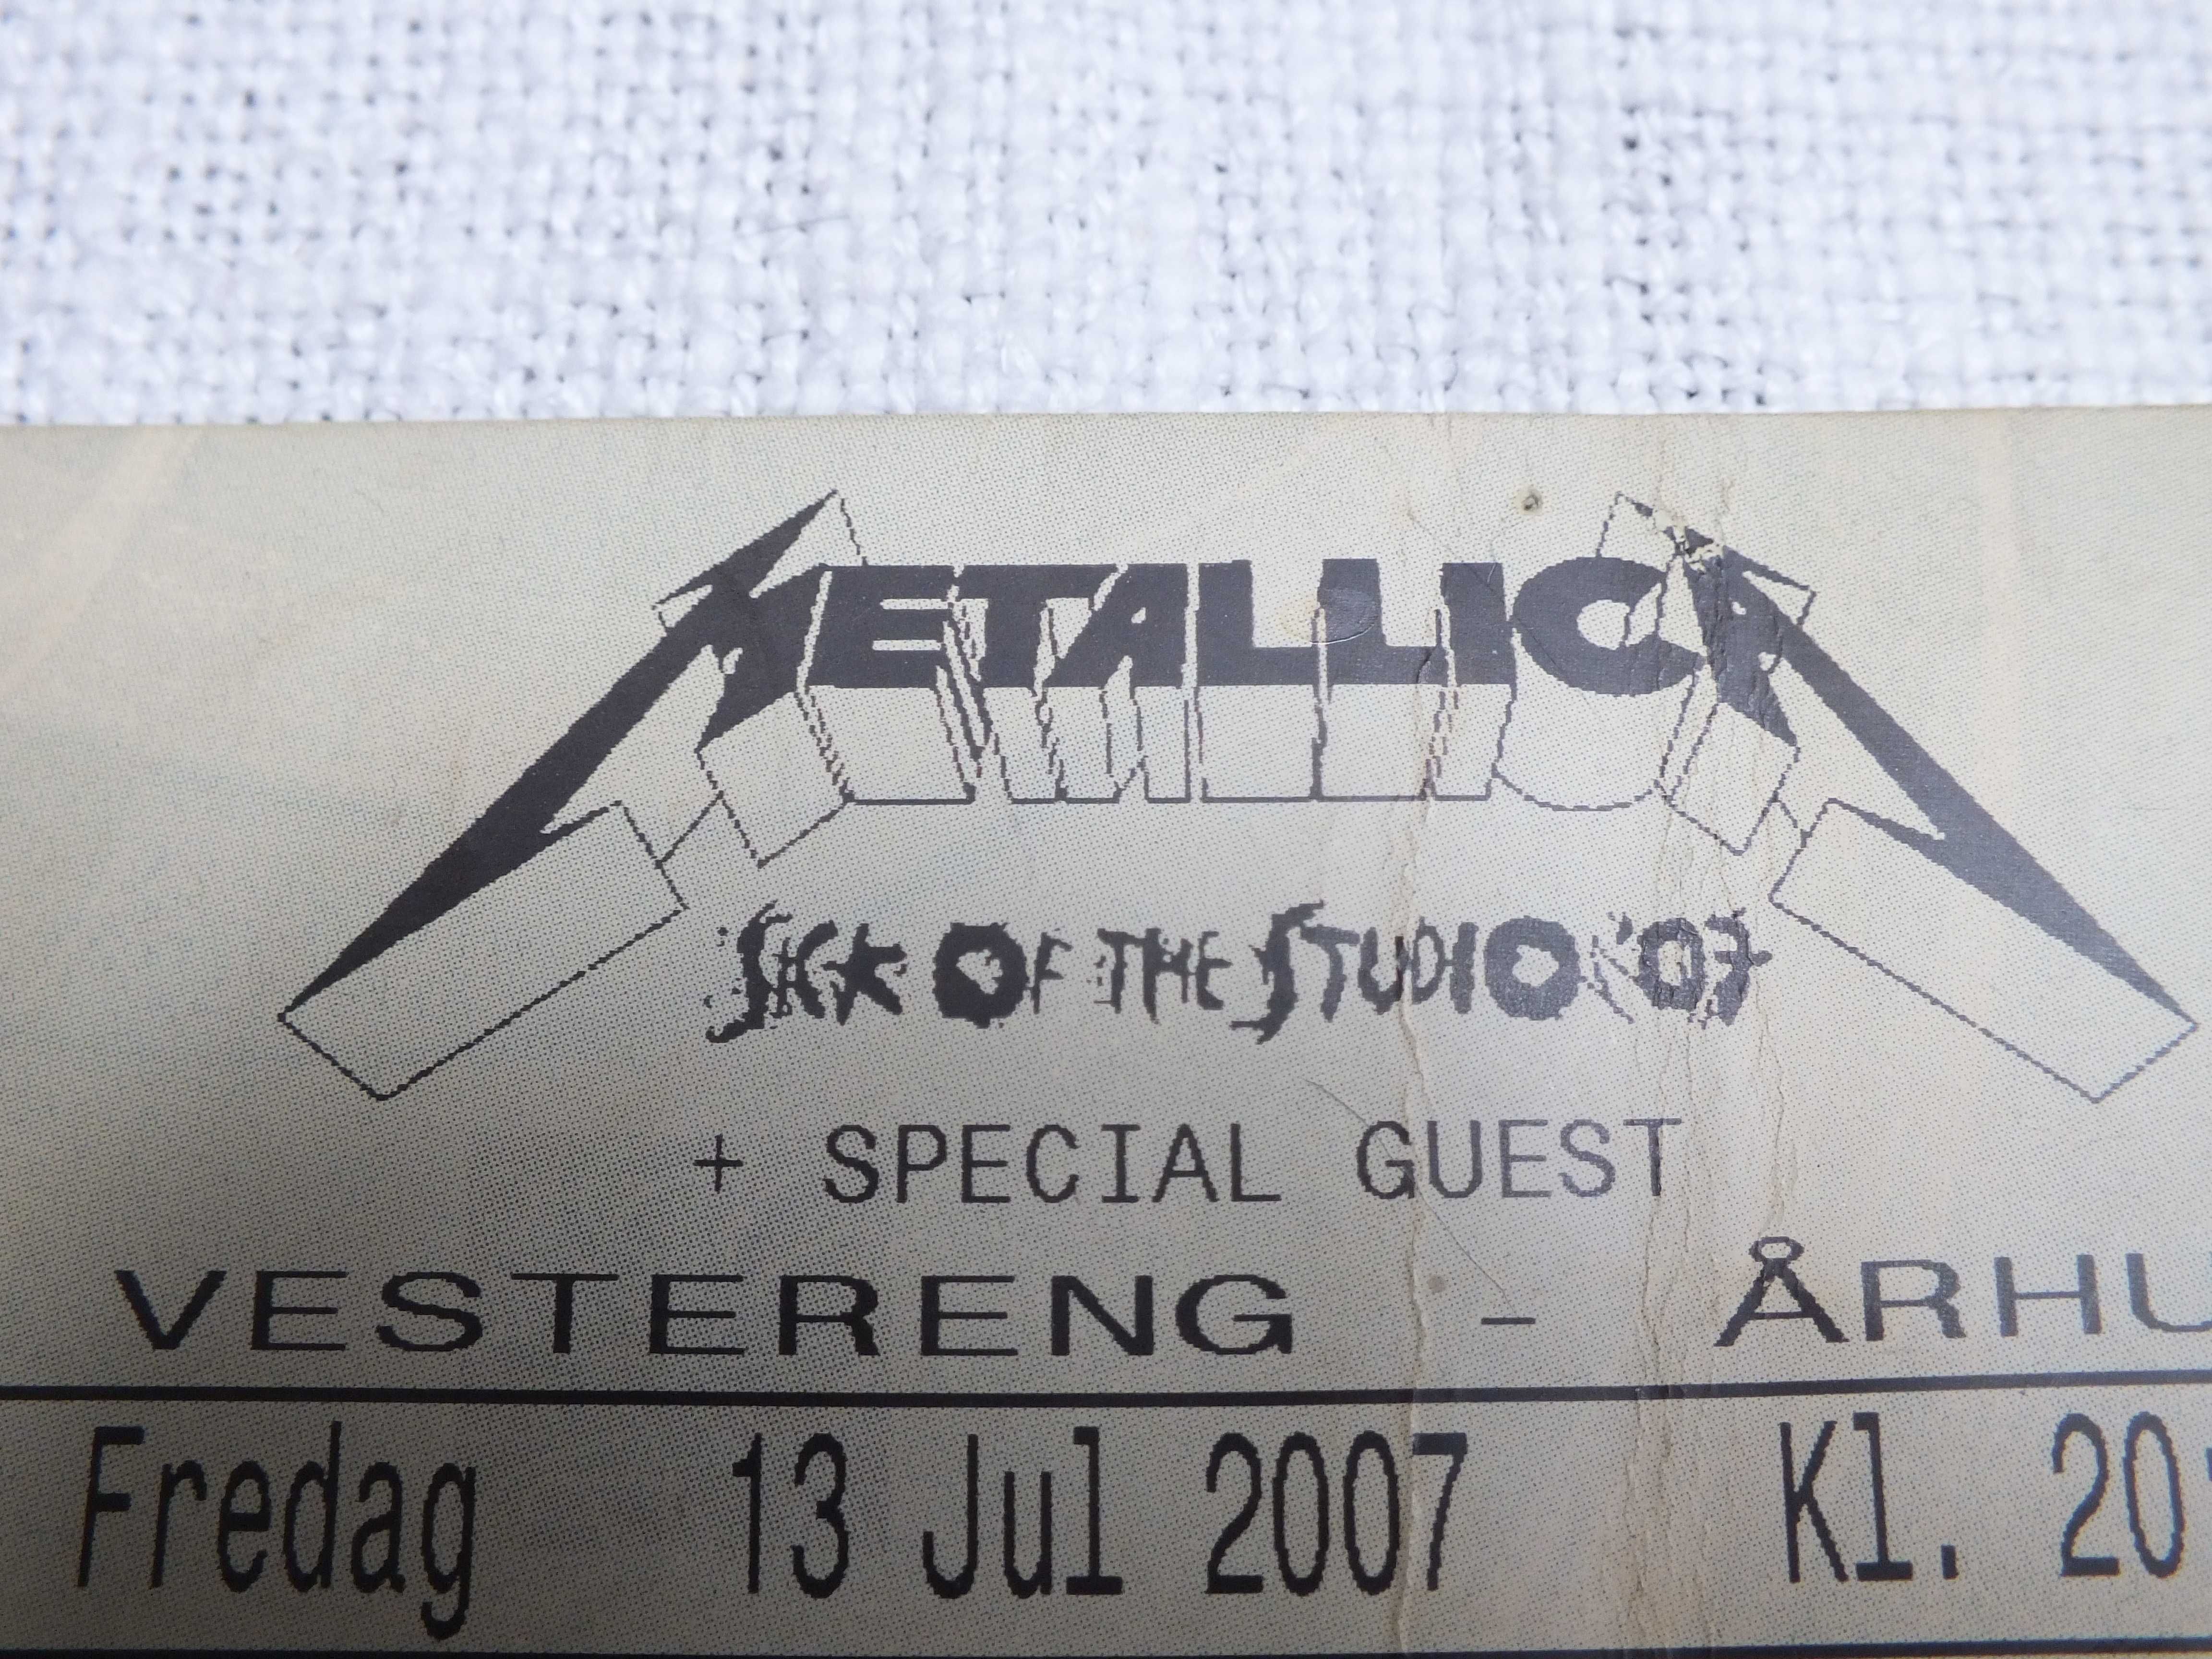 Kolekcjonerski bilet na koncert zespołu METALICA z  Arhus  23.JUL 2007